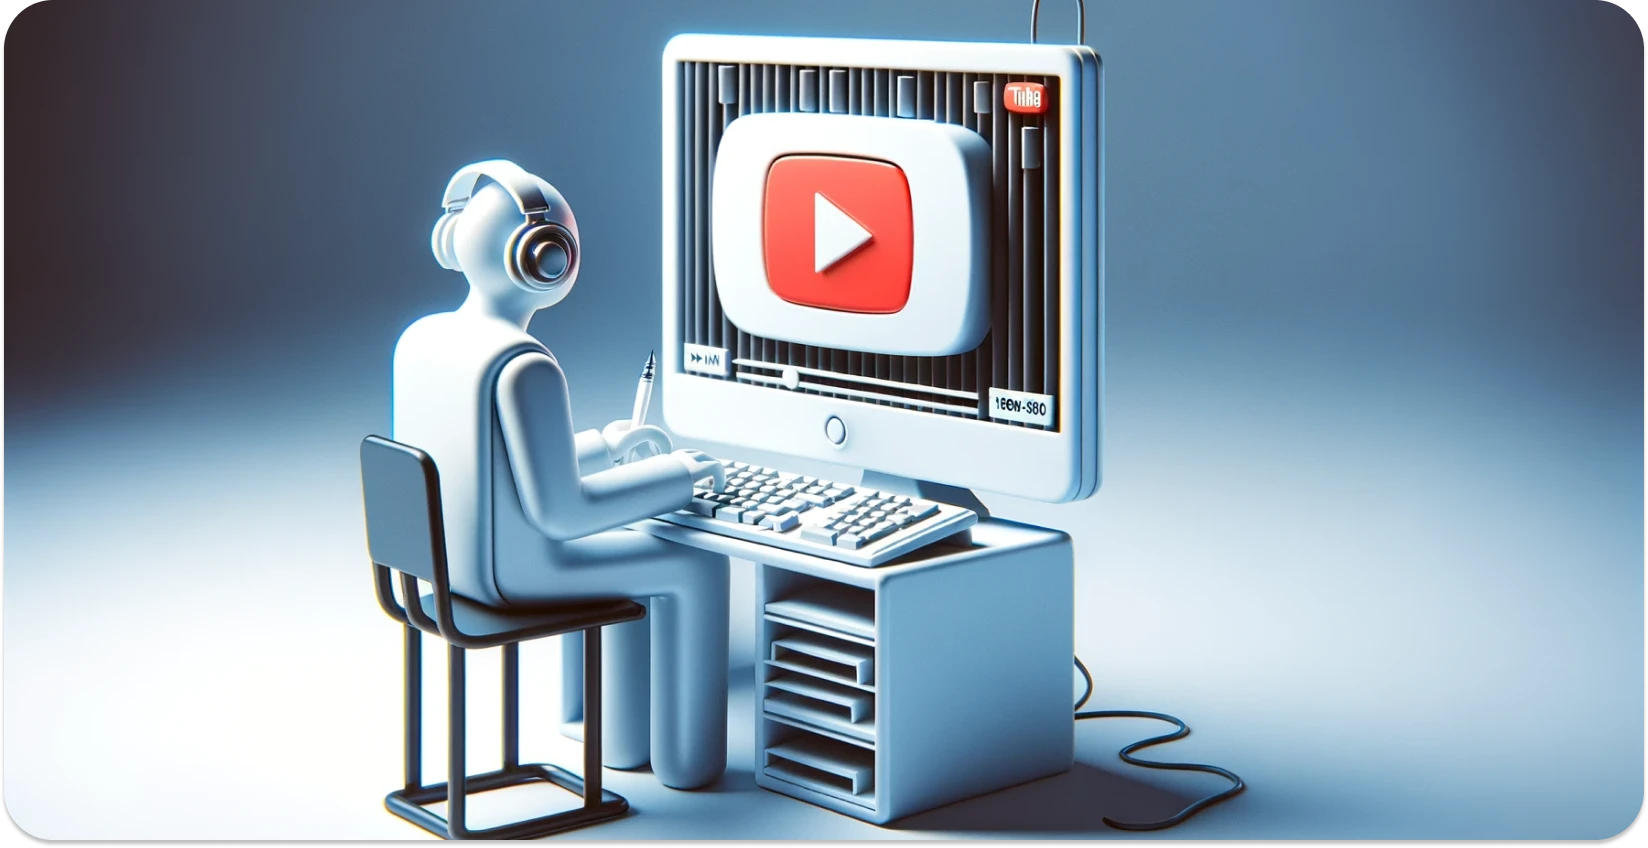 Стилизирана илустрација на лице користејќи компјутер со YouTube интерфејс, фокусирајќи се на транскрипција.